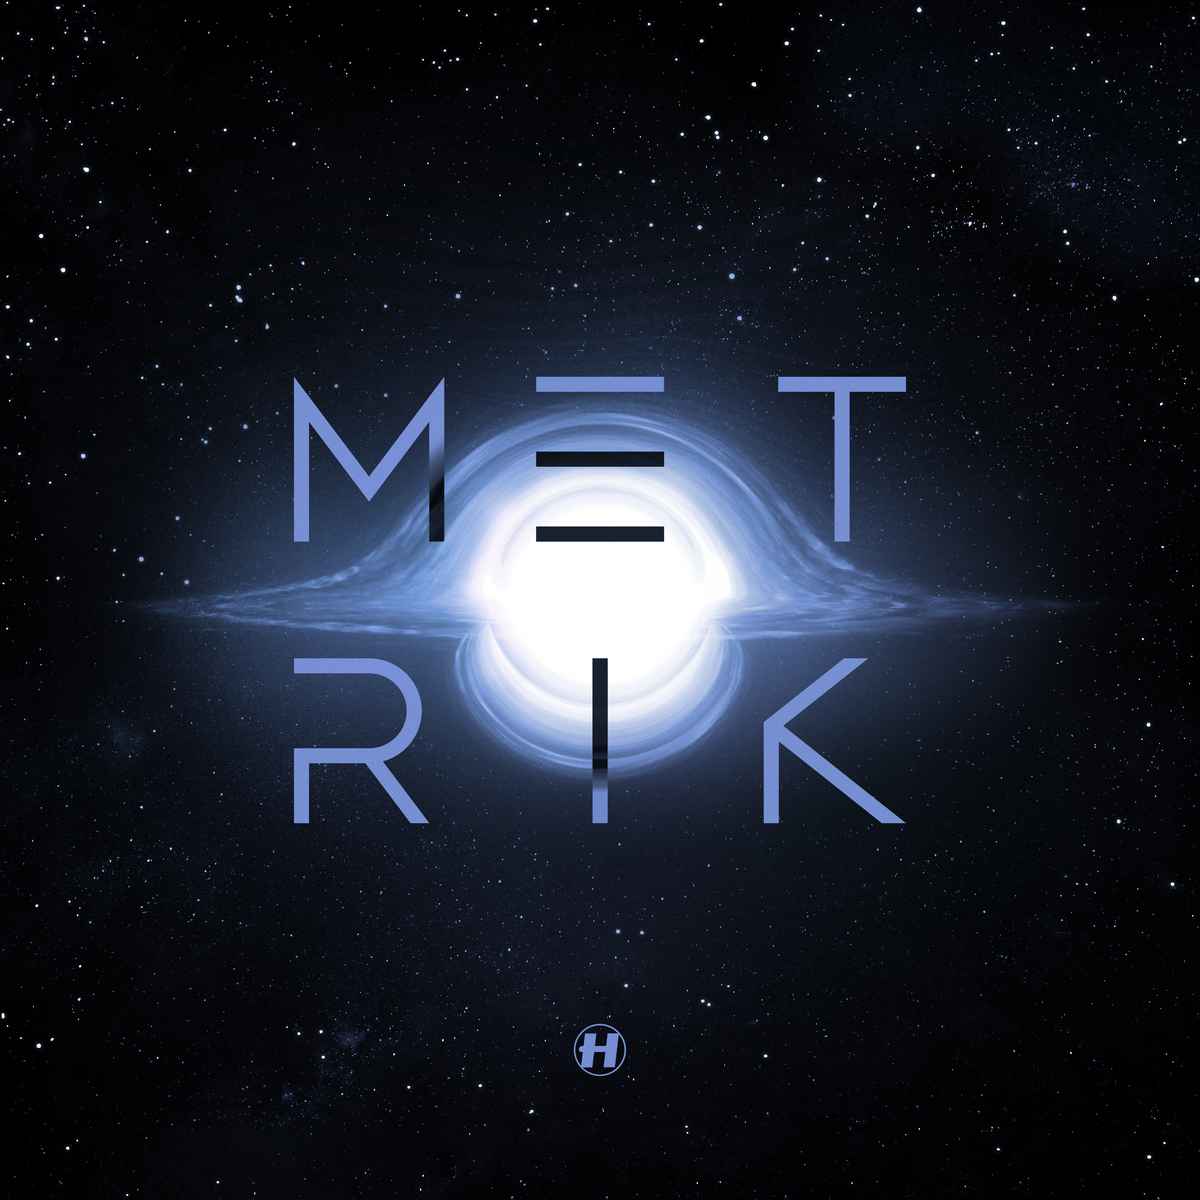 Metrik - Gravity(2020)